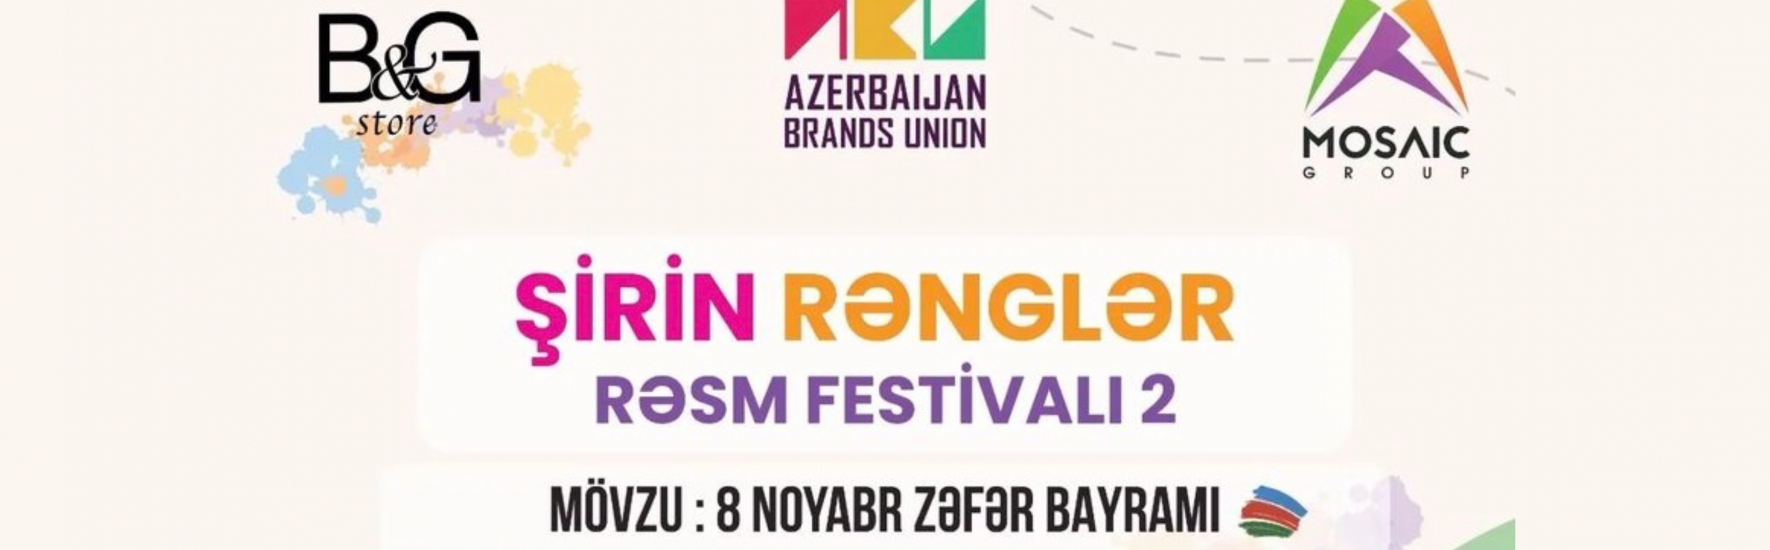 Şirin rənglər rəsm festivalı 2